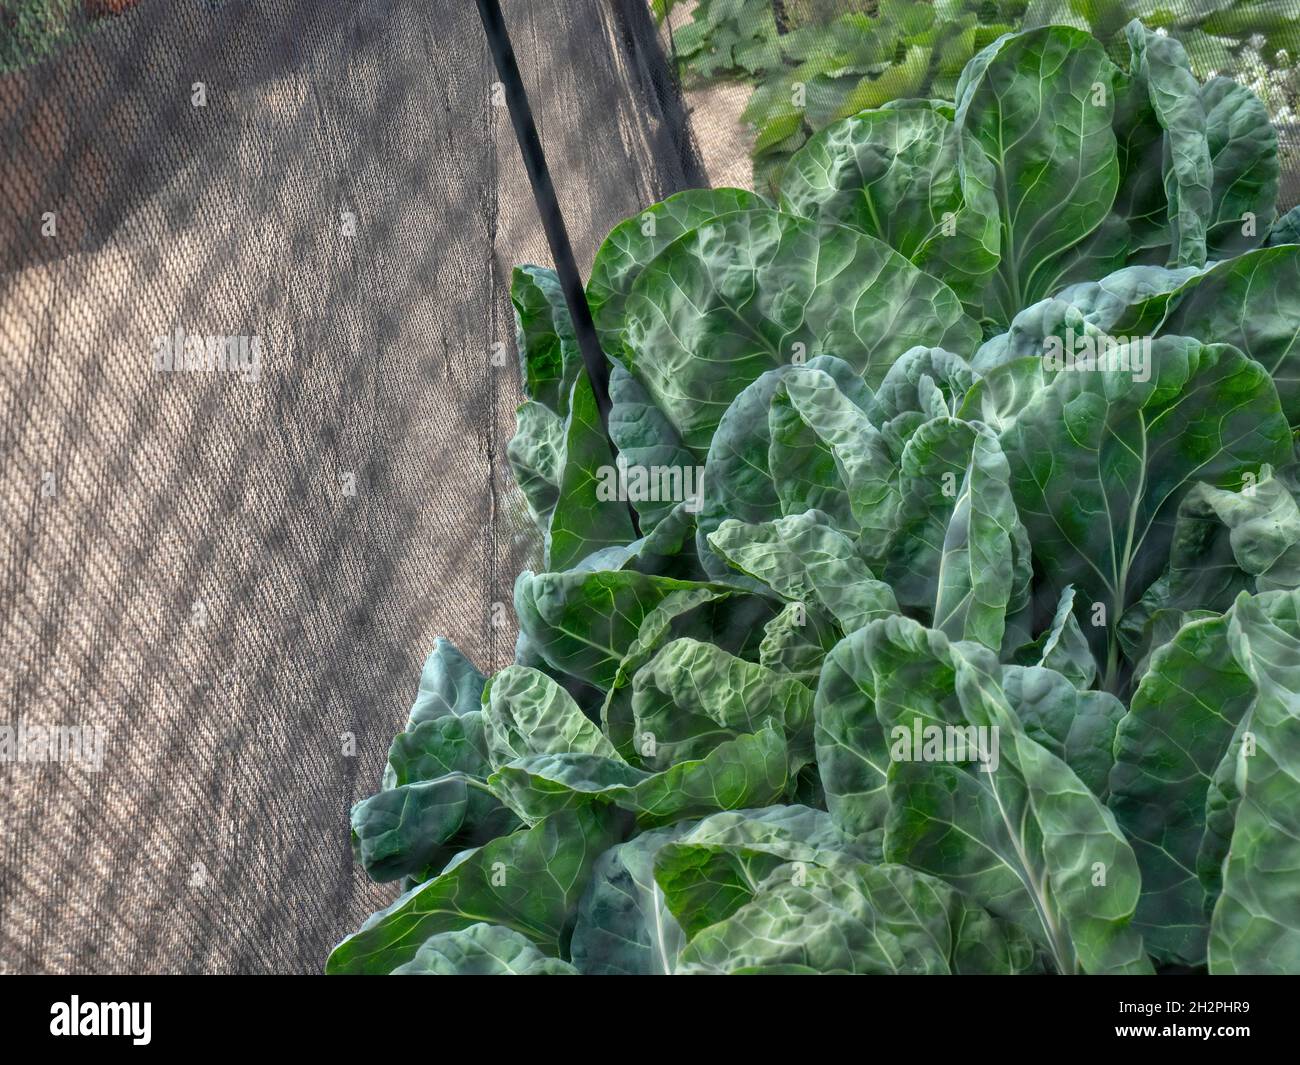 LE SPROUT EST PLACÉ AU-DESSUS de la tête de chou d'une plante d'allotissement du Sprout de Bruxelles, derrière des filets antiparasites d'enviromesh.Les hauts de sprout sont comestibles à leur propre droit Banque D'Images